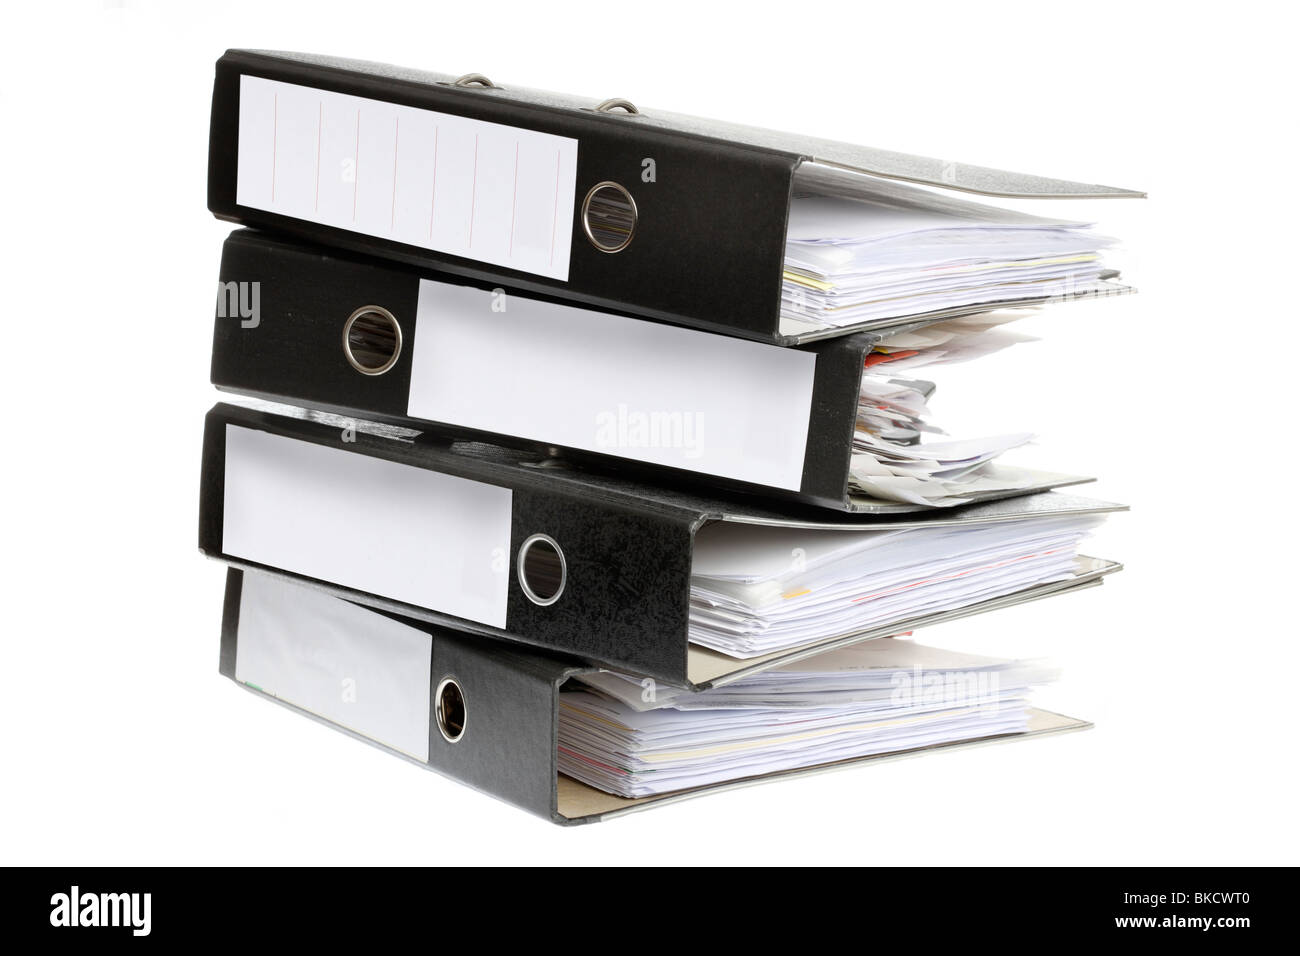 File di documento, la casella file, Forniture per uffici, documenti nella cartella di archiviazione. Foto Stock